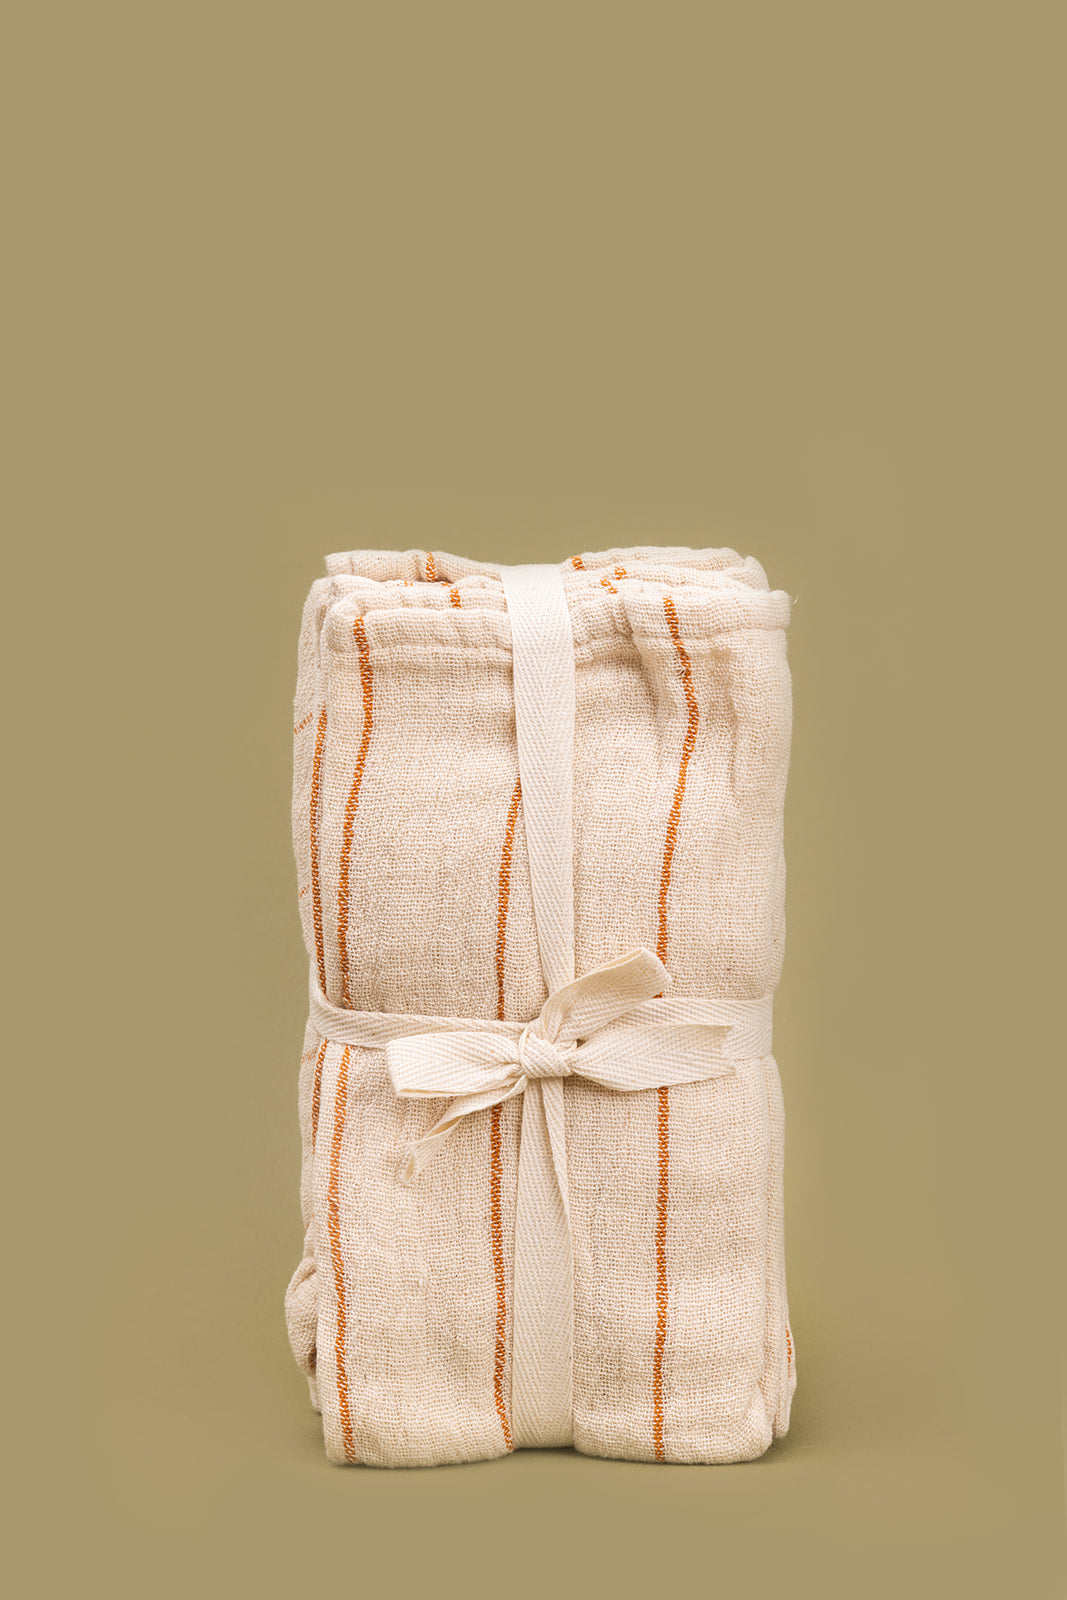 Cotton Double Cloth Napkins, Set of 4 - Joy Meets Home